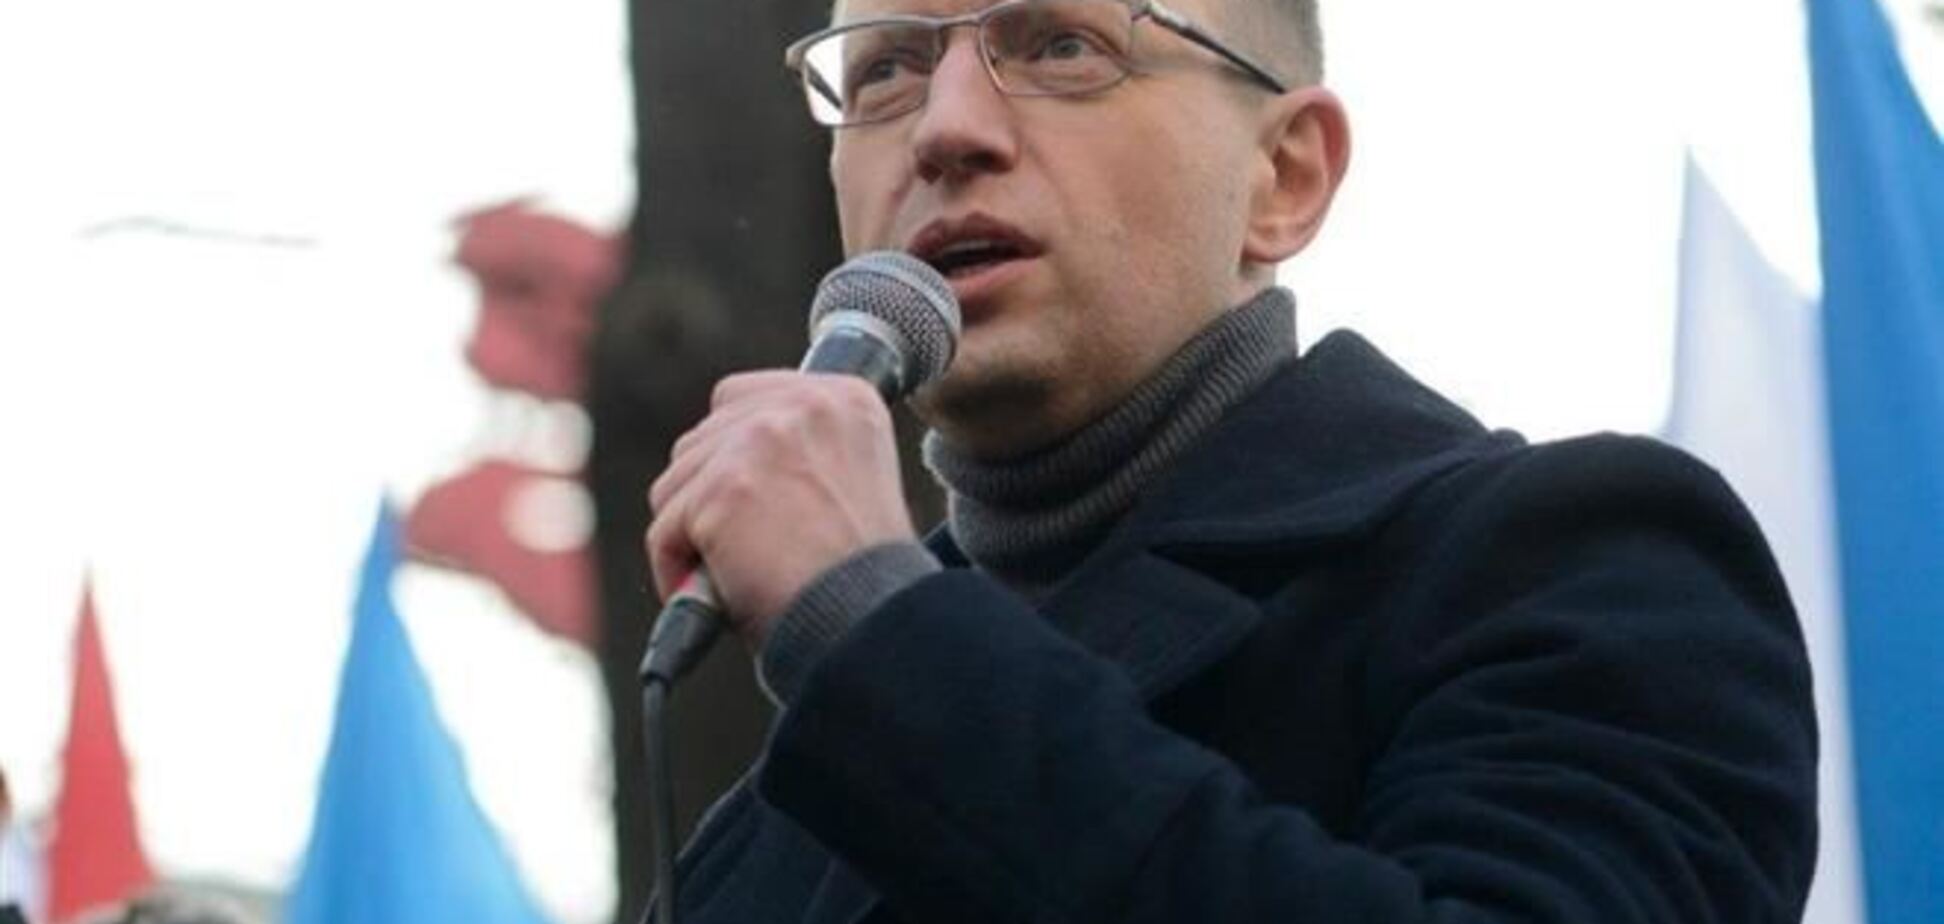 В 2010 году Яценюк утверждал, что Тимошенко и Янукович одинаковые